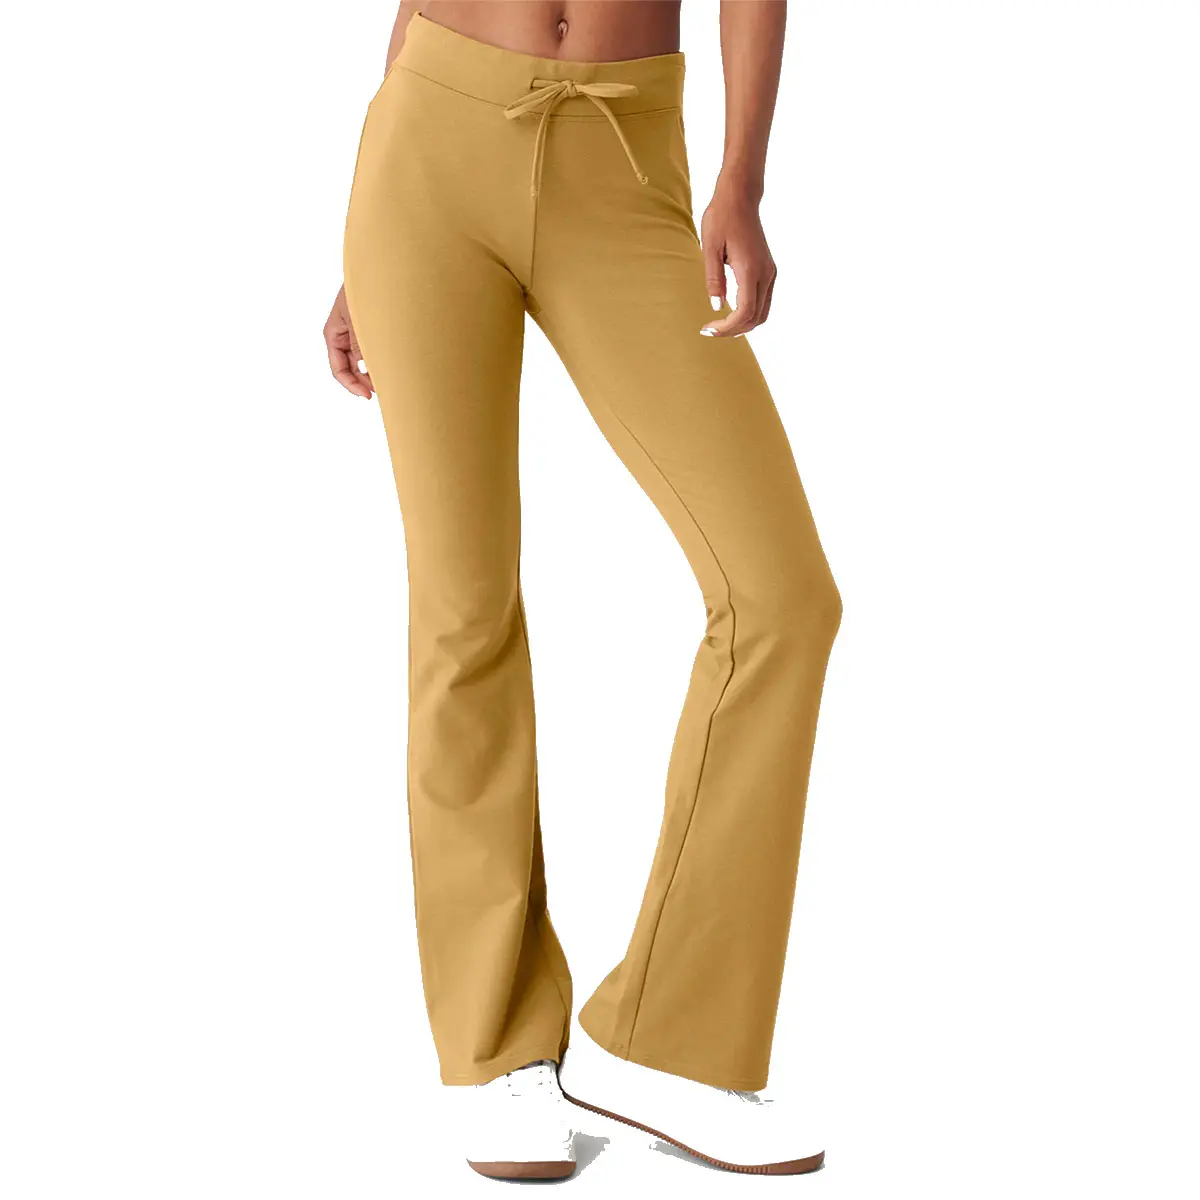 Servicio OEM multicolor de alta calidad Streetwear pantalones de mujer/cómodos pantalones casuales transpirables para mujer